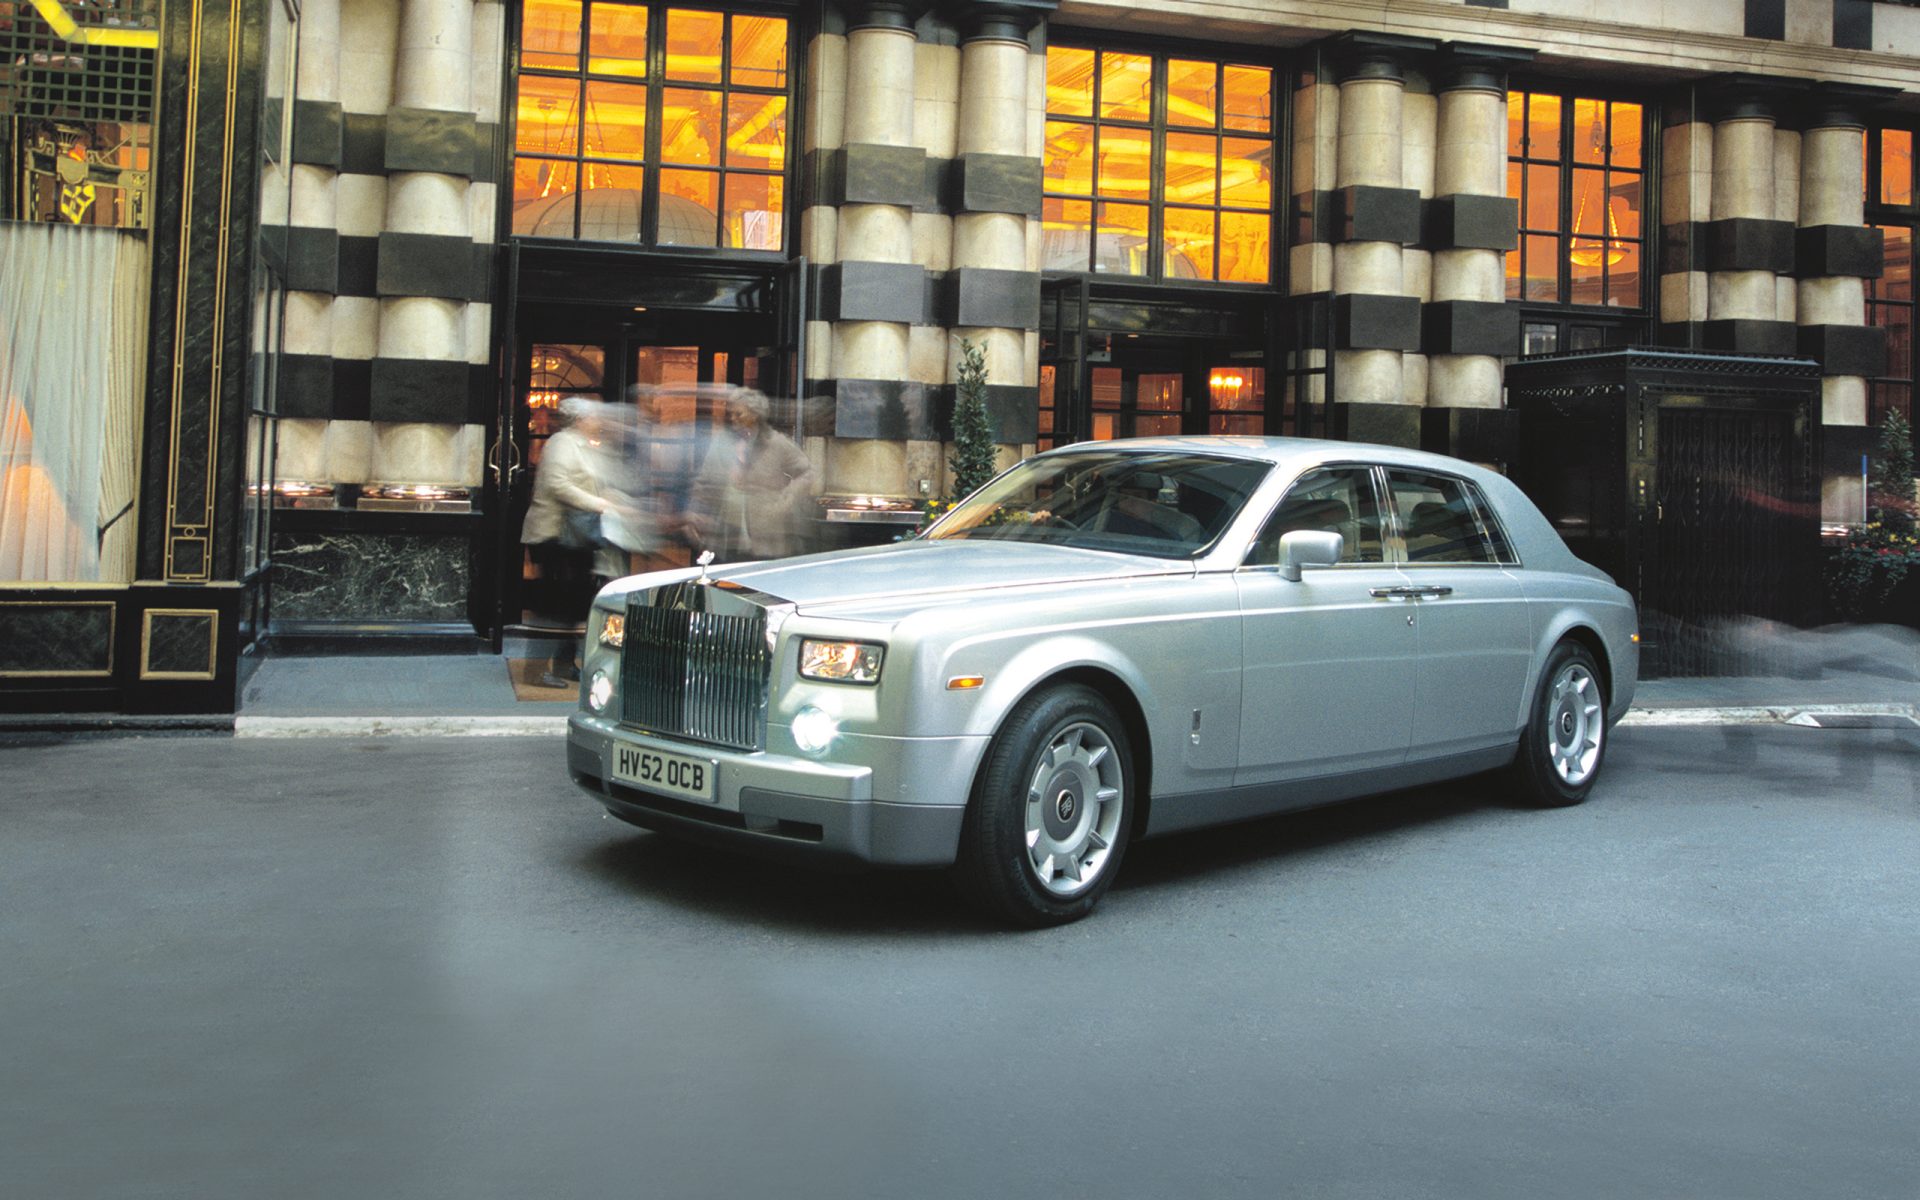 Rolls-Royce Motor Cars bringt den neuen Phantom auf den Markt.